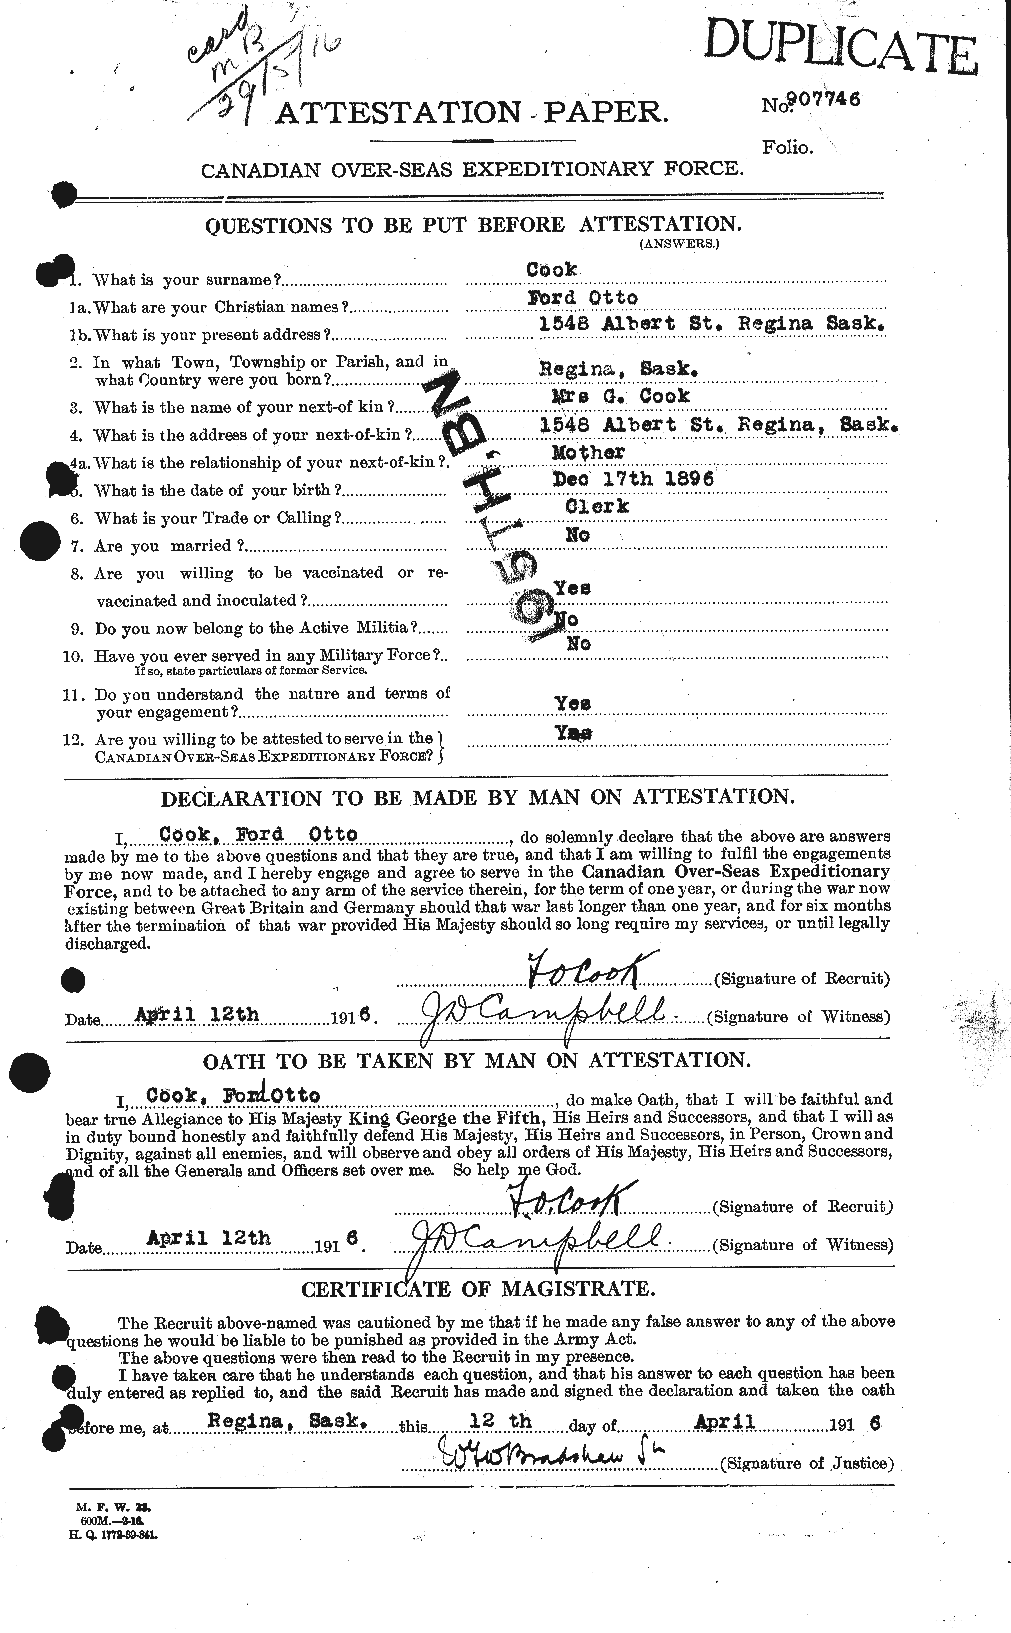 Dossiers du Personnel de la Première Guerre mondiale - CEC 073908a